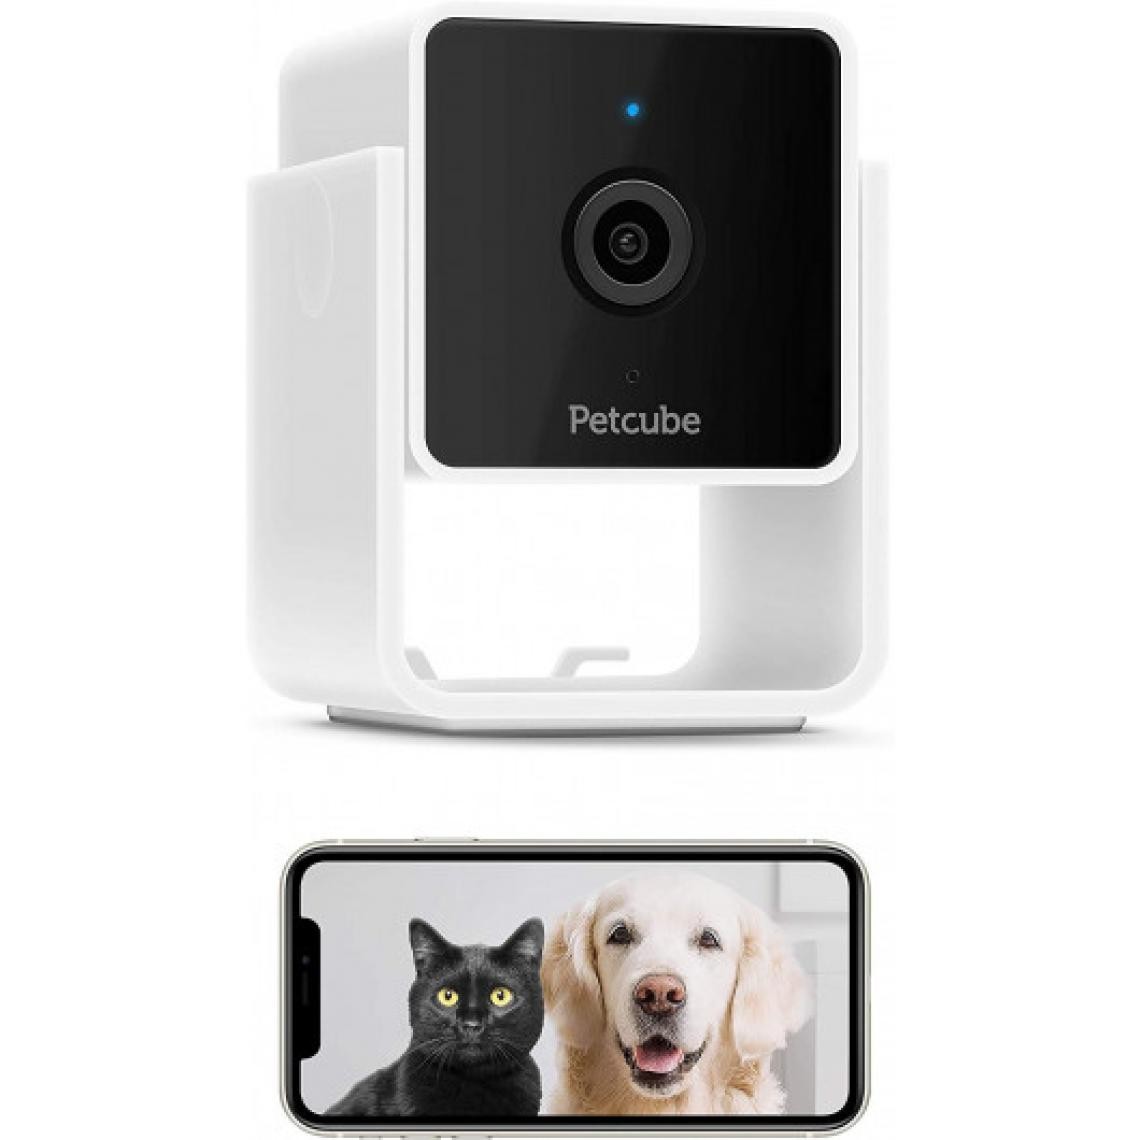 Ofs Selection - Petcube, la caméra pour chien et chat - Caméra de surveillance connectée